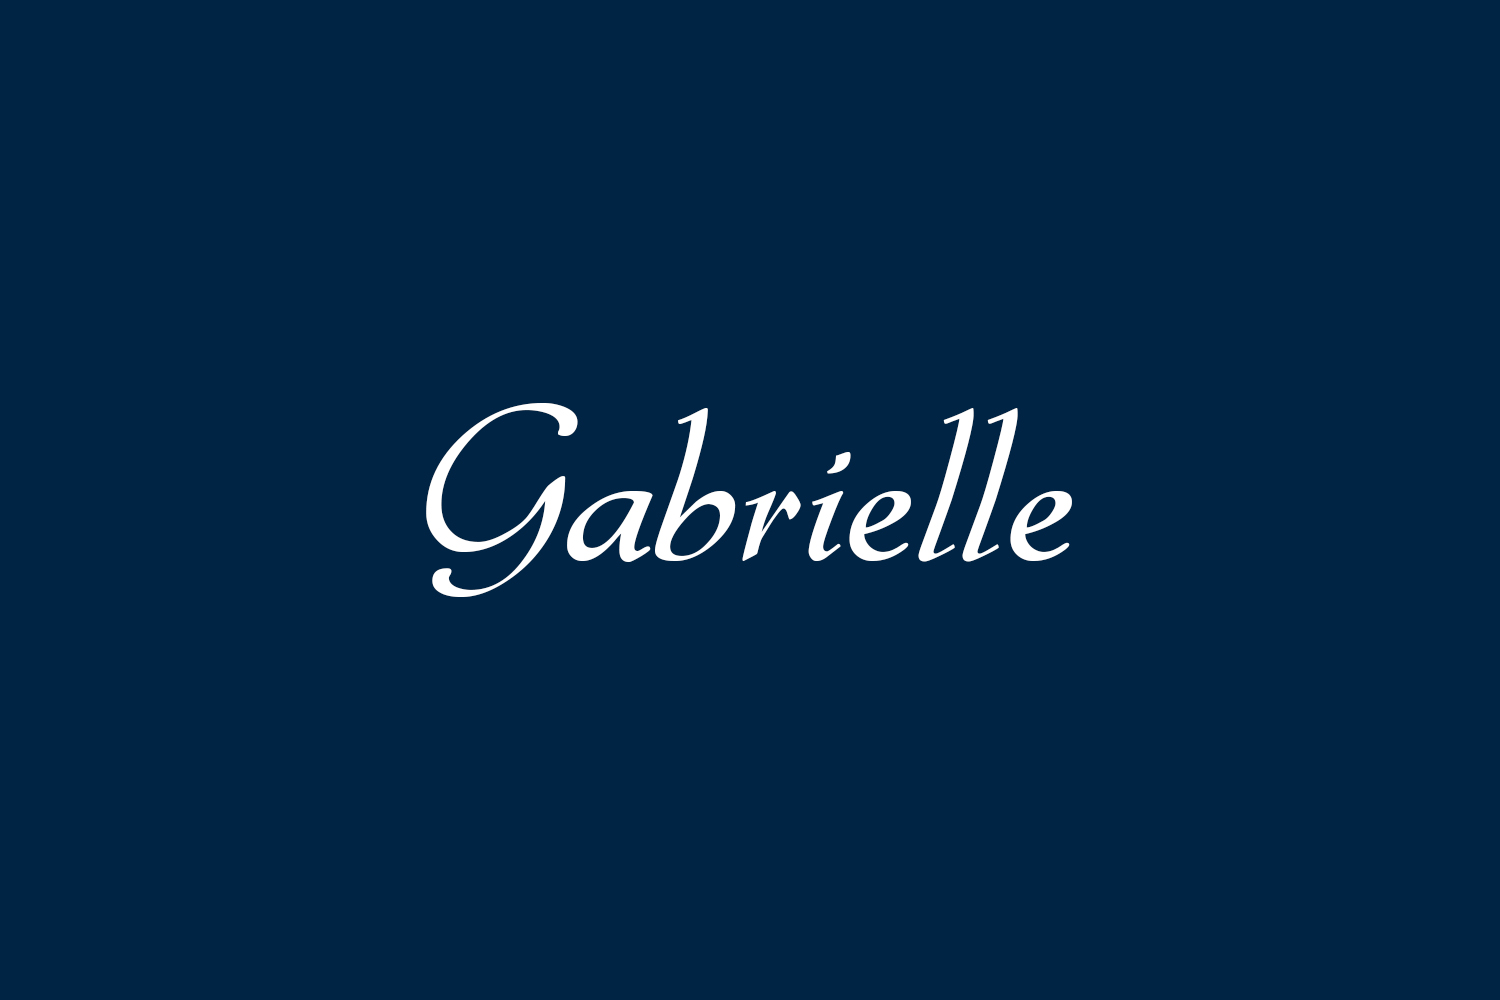 Gabrielle Free Font